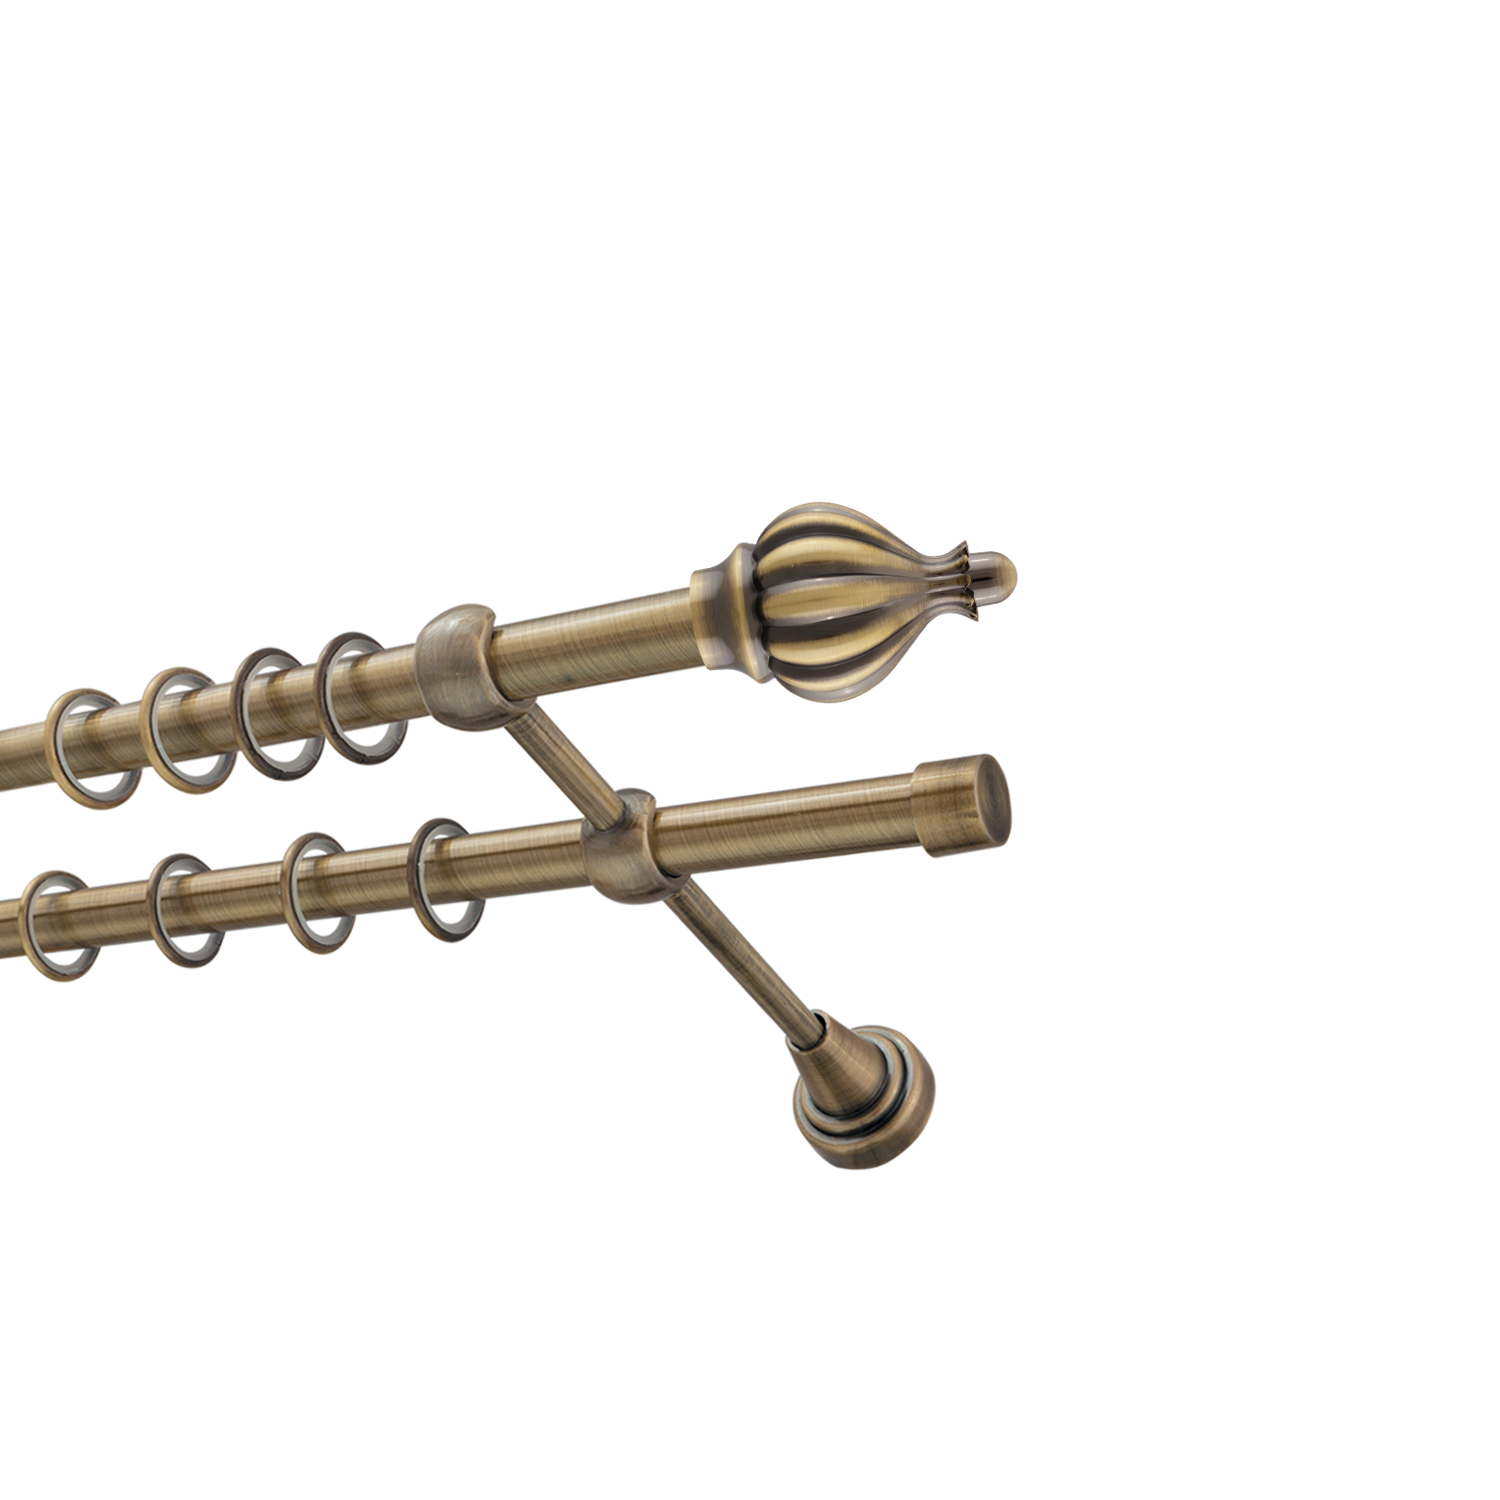 Металлический карниз для штор Афродита, двухрядный 16/16 мм, бронза, гладкая штанга, длина 180 см - фото Wikidecor.ru